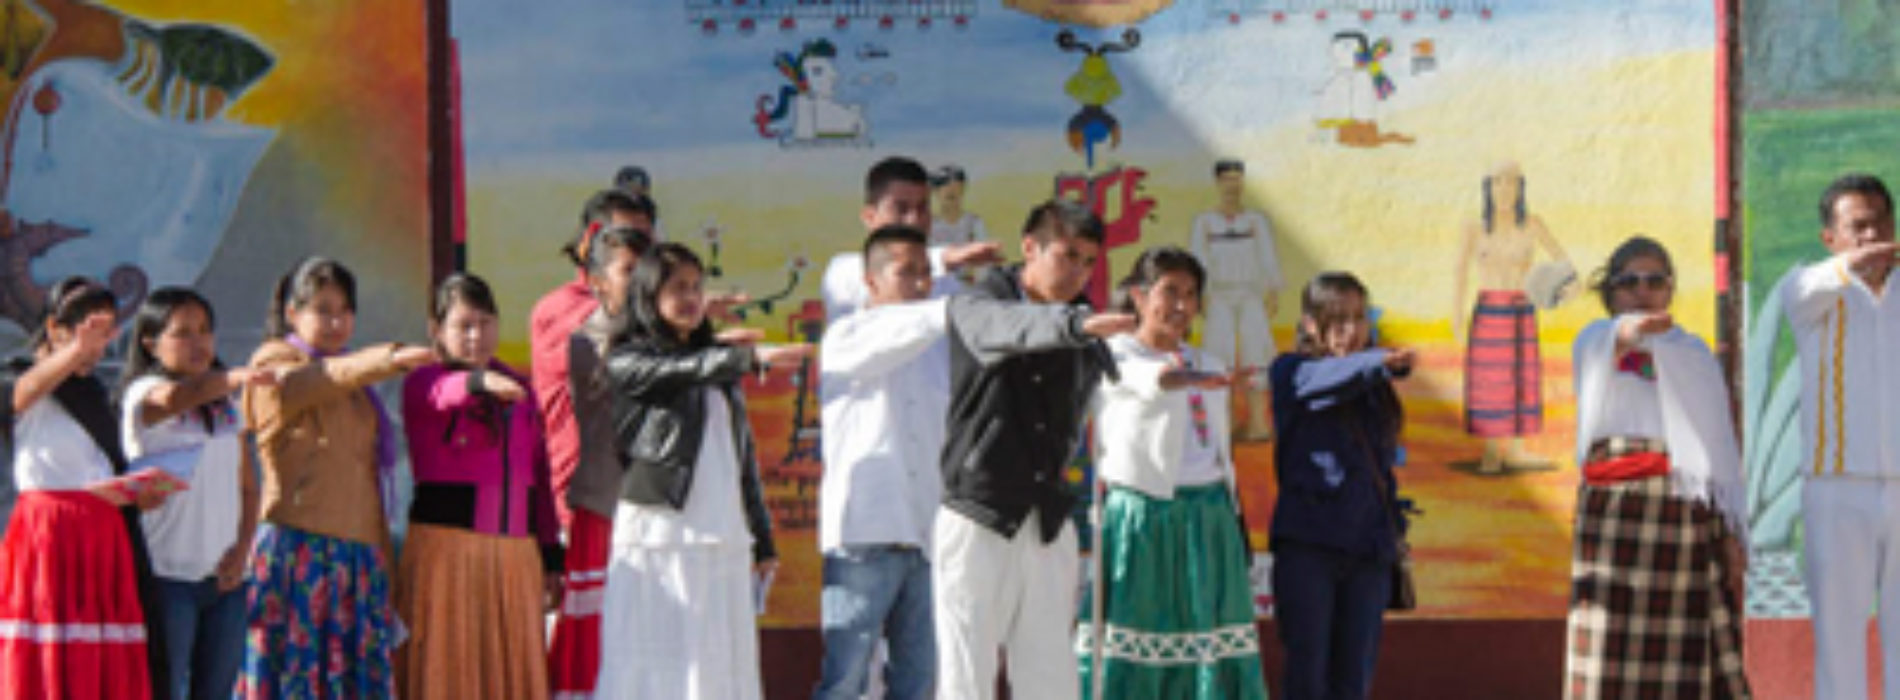 Escuela Normal Bilingüe Intercultural  cumple 16 años  formando docentes oaxaqueños